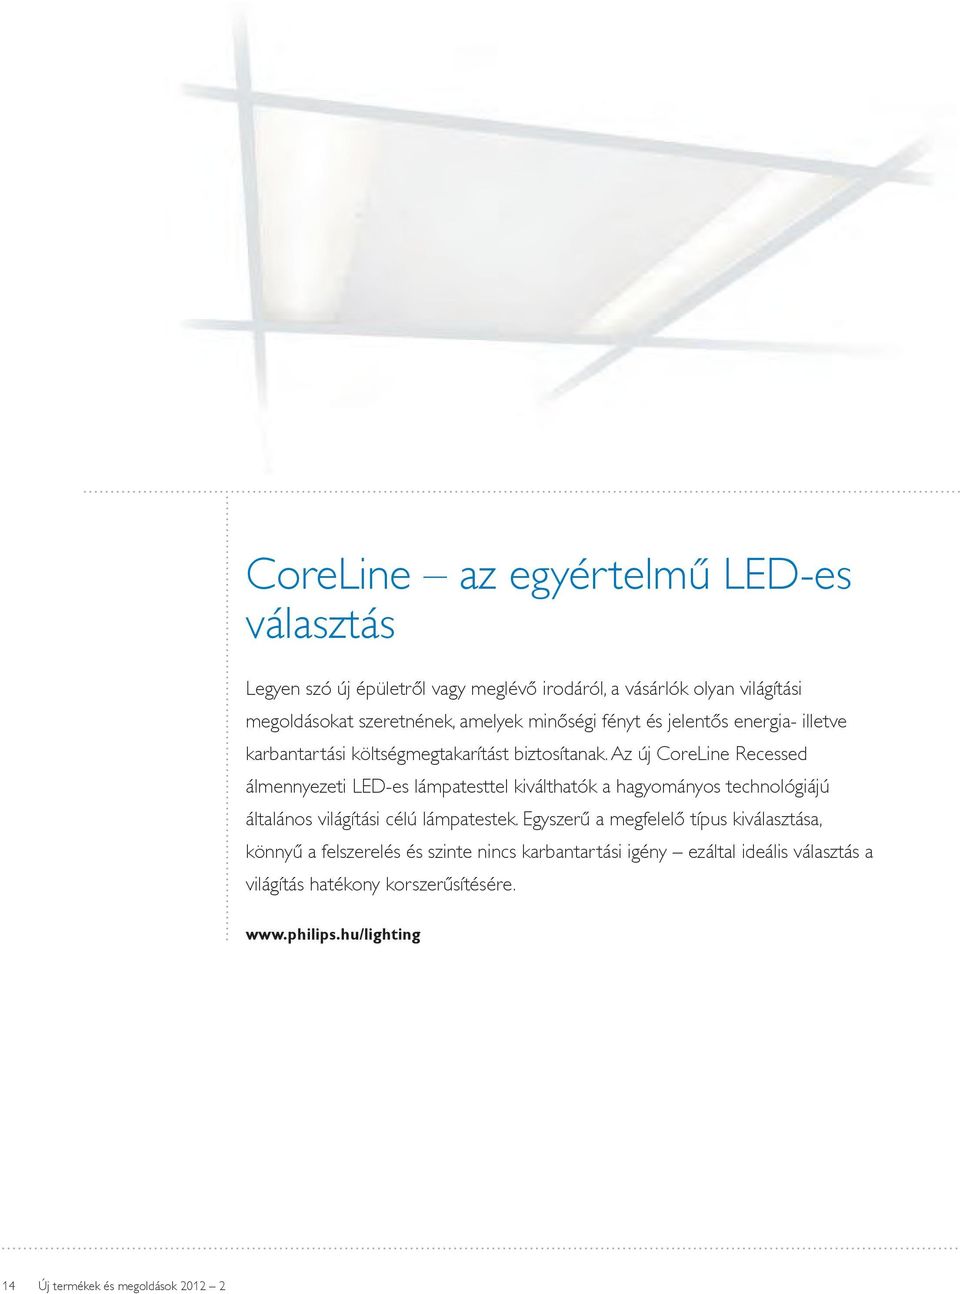 Az új CoreLine Recessed álmennyezeti LED-es lámpatesttel kiválthatók a hagyományos technológiájú általános világítási célú lámpatestek.